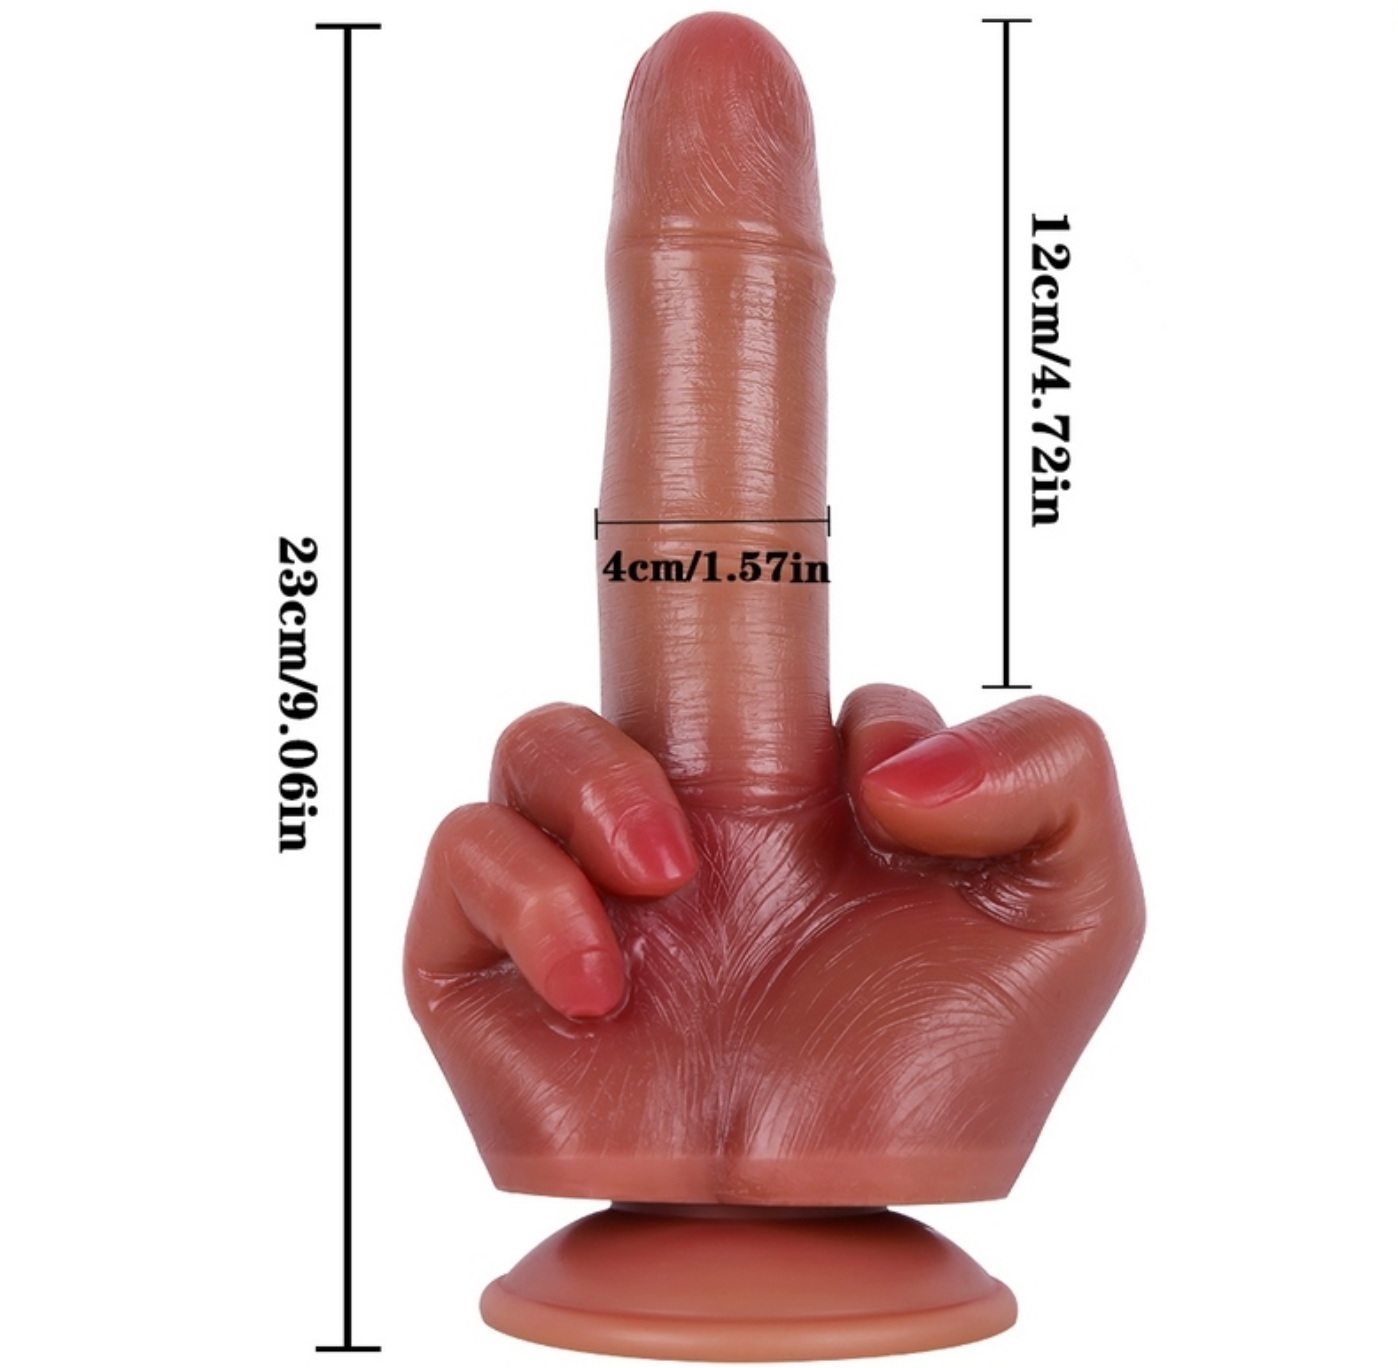 Middle Finger Dildo